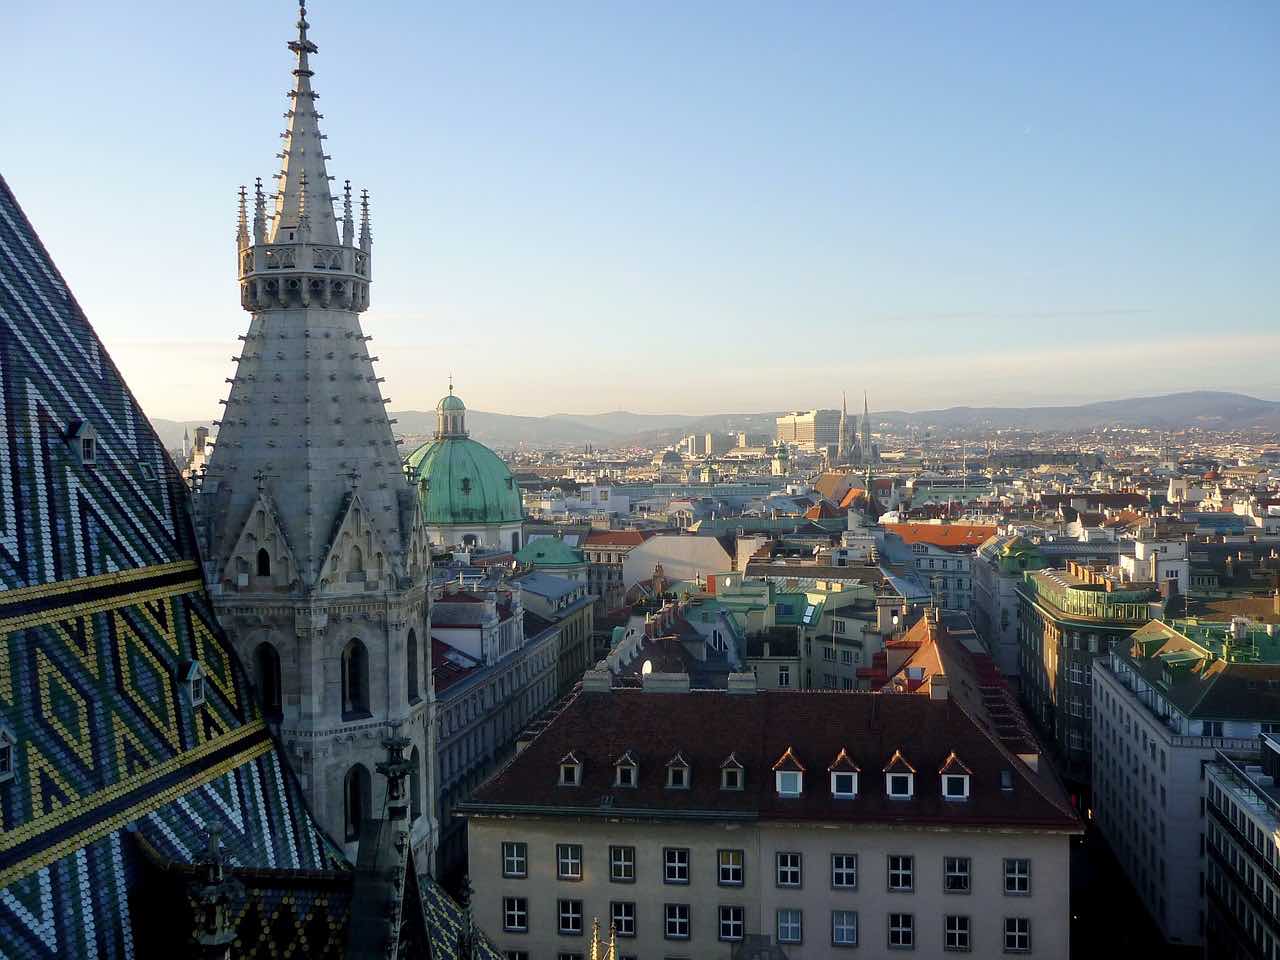 Вена — это город с богатейшим культурным наследием. Люди здесь не торопятся жить, а наслаждаются каждым моментом. А еще в Вене обитает 22 вида летучих мышей — вы об этом знали? Источник фото: Shutterstock.